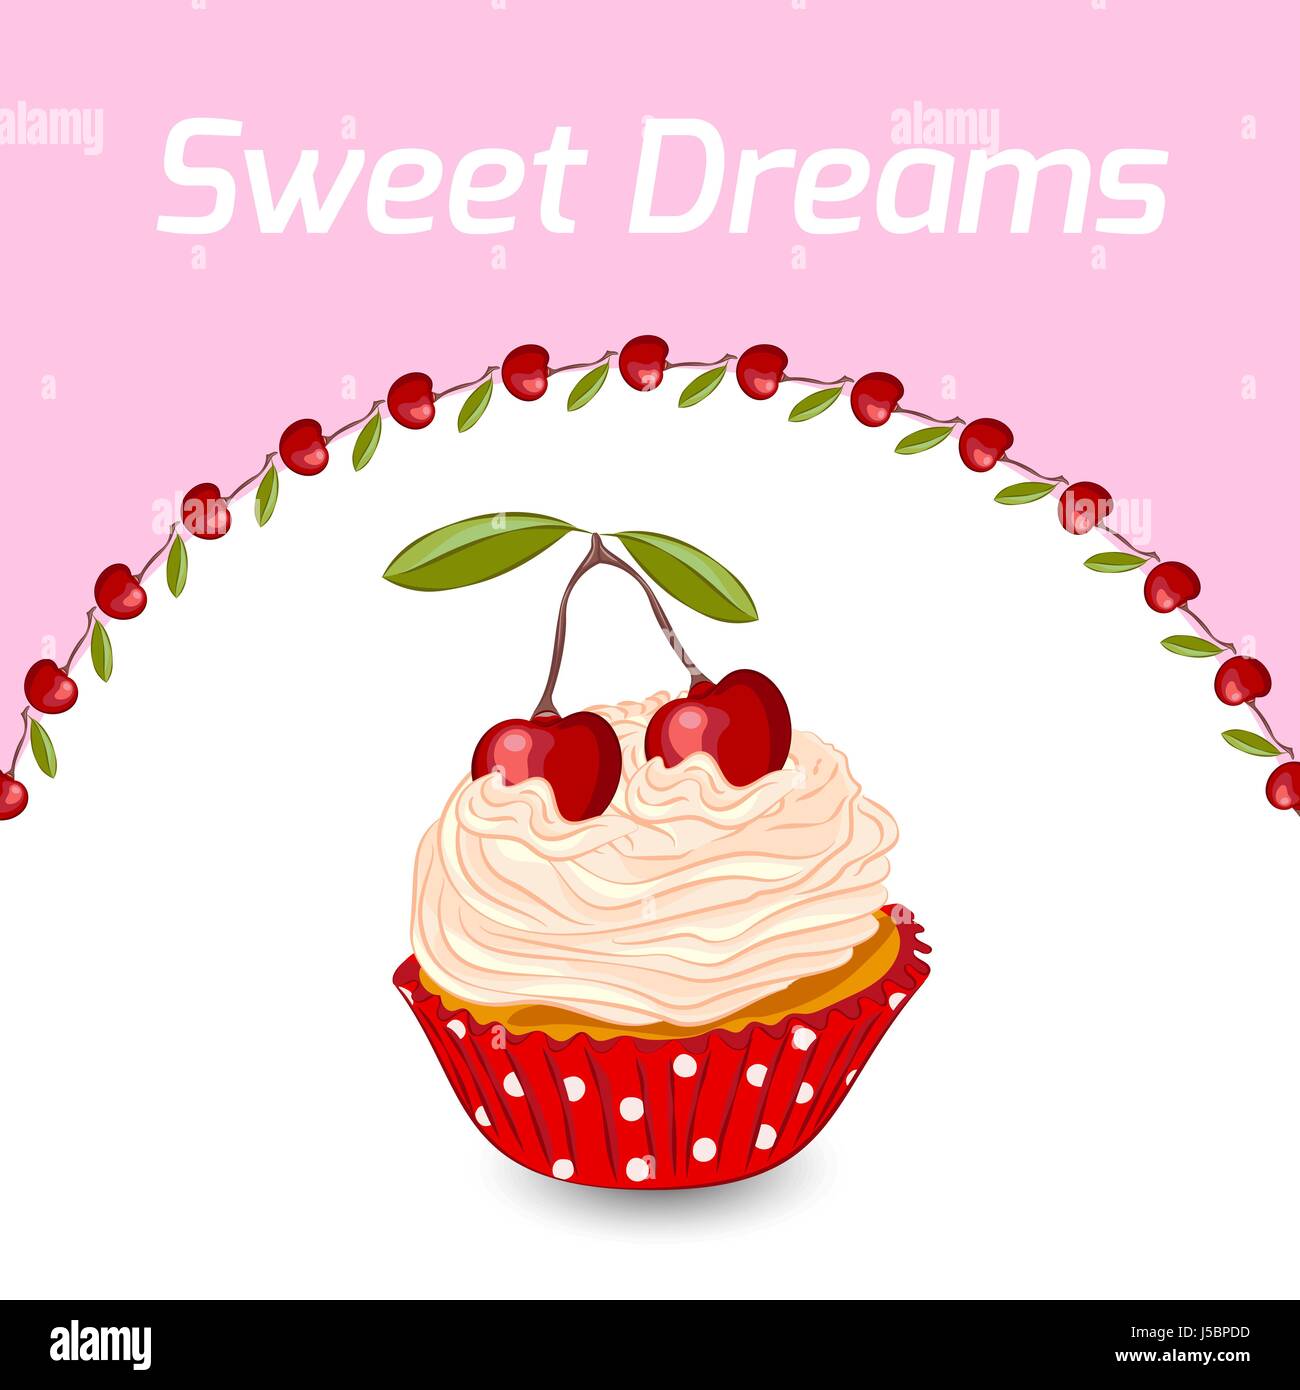 Cupcake mit Sahne und Kirsche. Vektor Geburtstag Grußkarte oder Einladung  Vorlage. Süße Träume-Konzept Stock-Vektorgrafik - Alamy